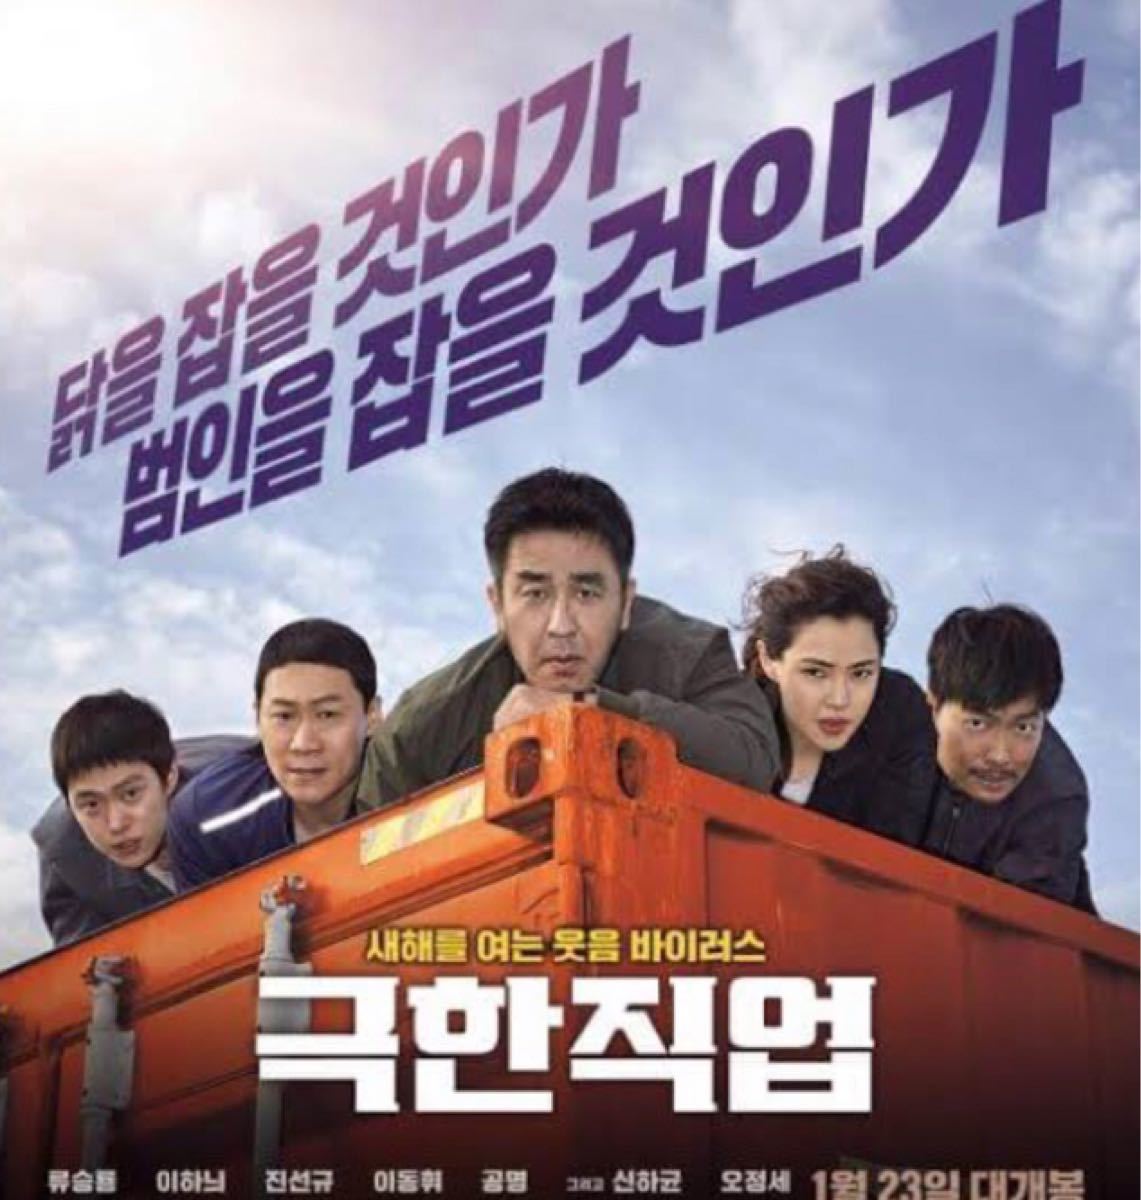 韓国映画  エクストリームジョブ  リュ・スンリョン  イ・ハニ  DVD  日本語吹替有り  レーベル有り  期間限定価格